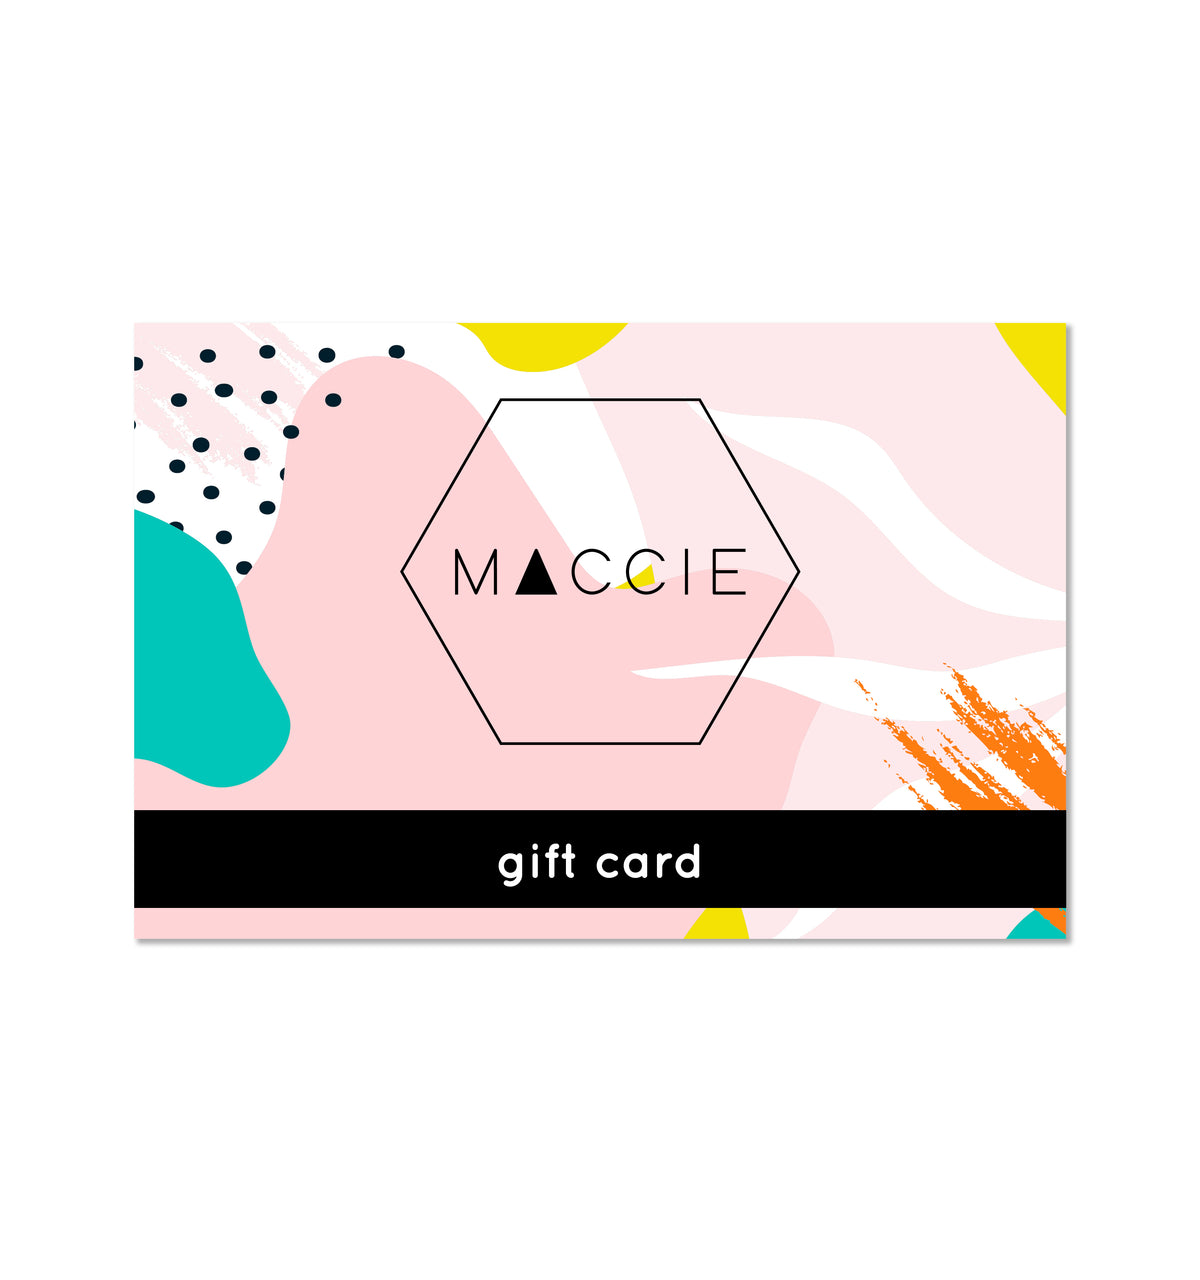 MACCIE gift card